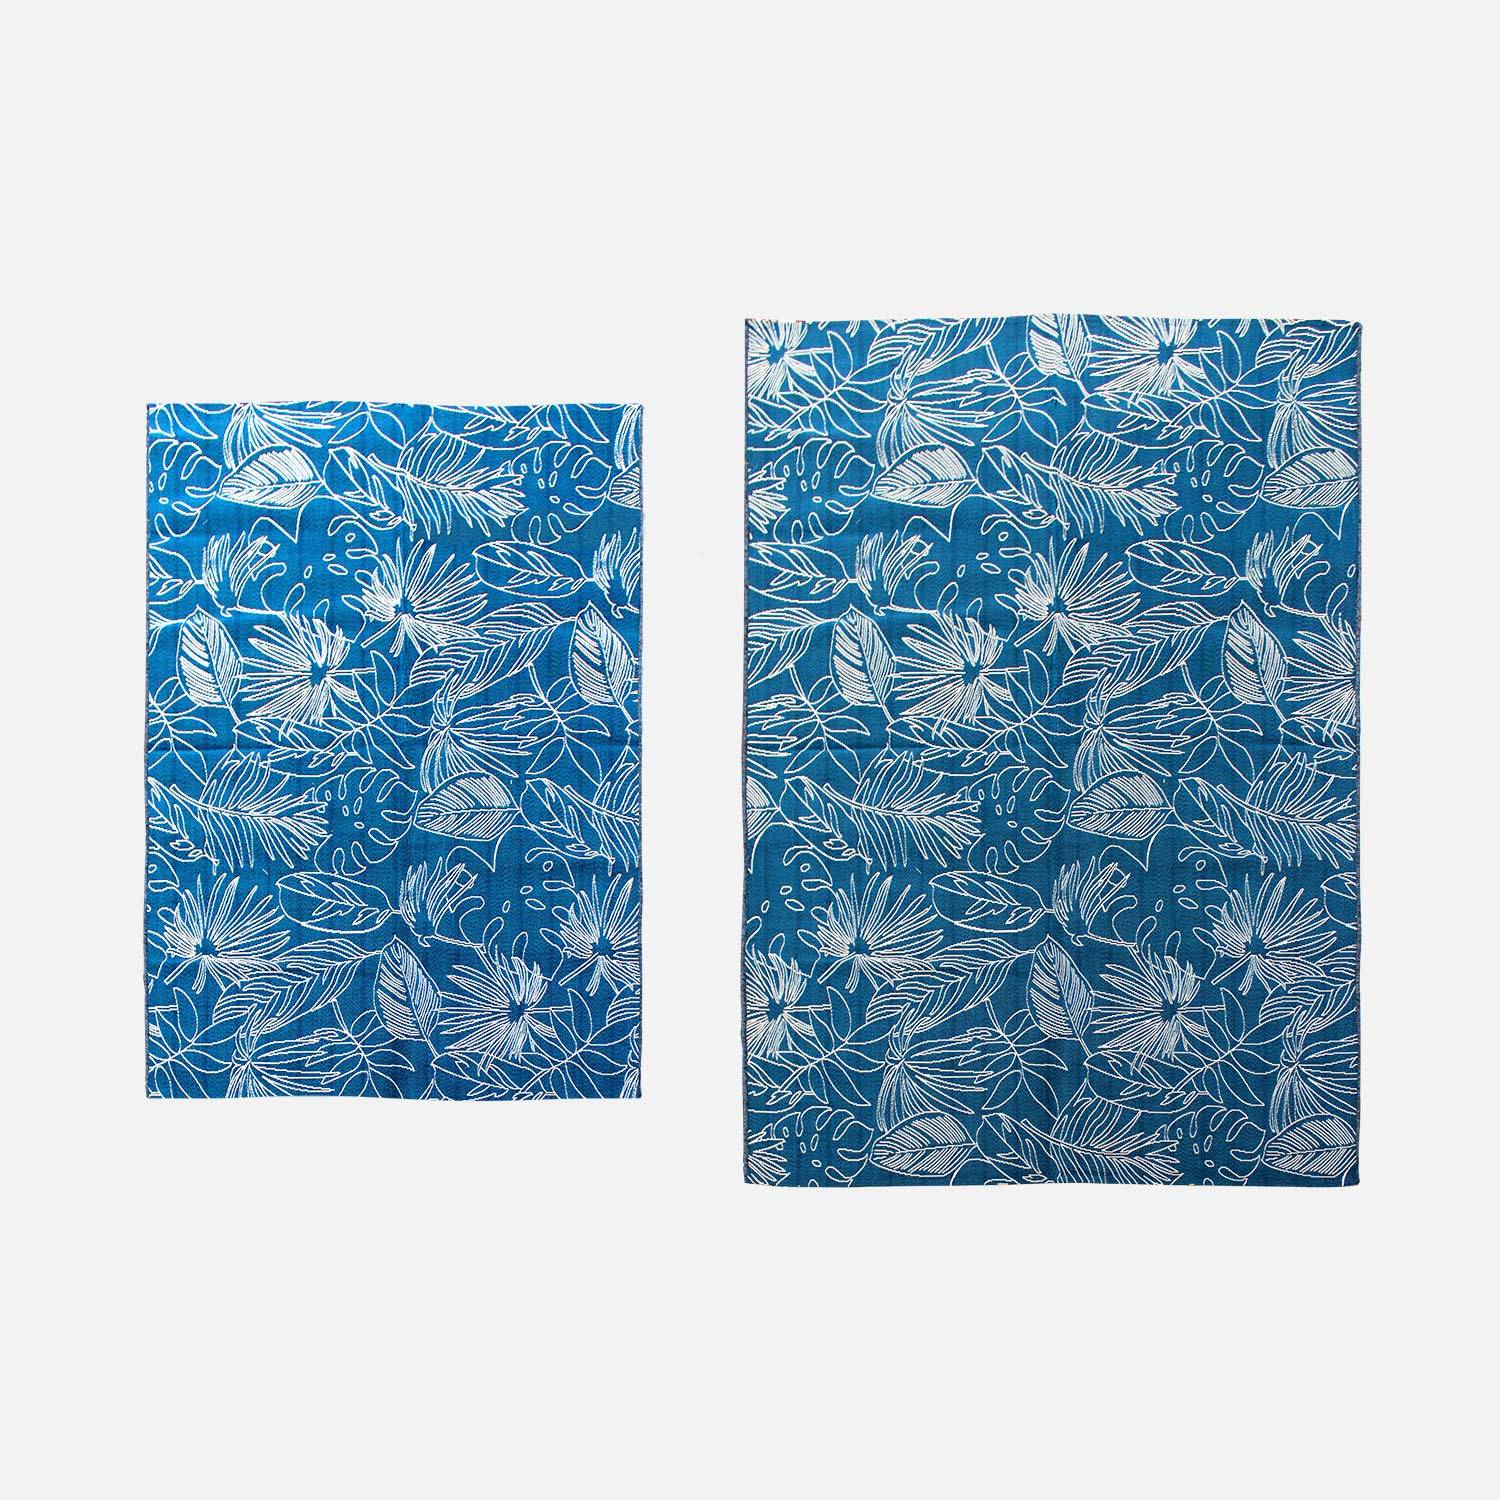 Teppich Outdoor/indoor 290 x 200 cm, Dichte 1,15 kg/m2, Entenblau mit exotischem Muster in Weiß, UV-behandelt, 4-Jahreszeiten Photo3